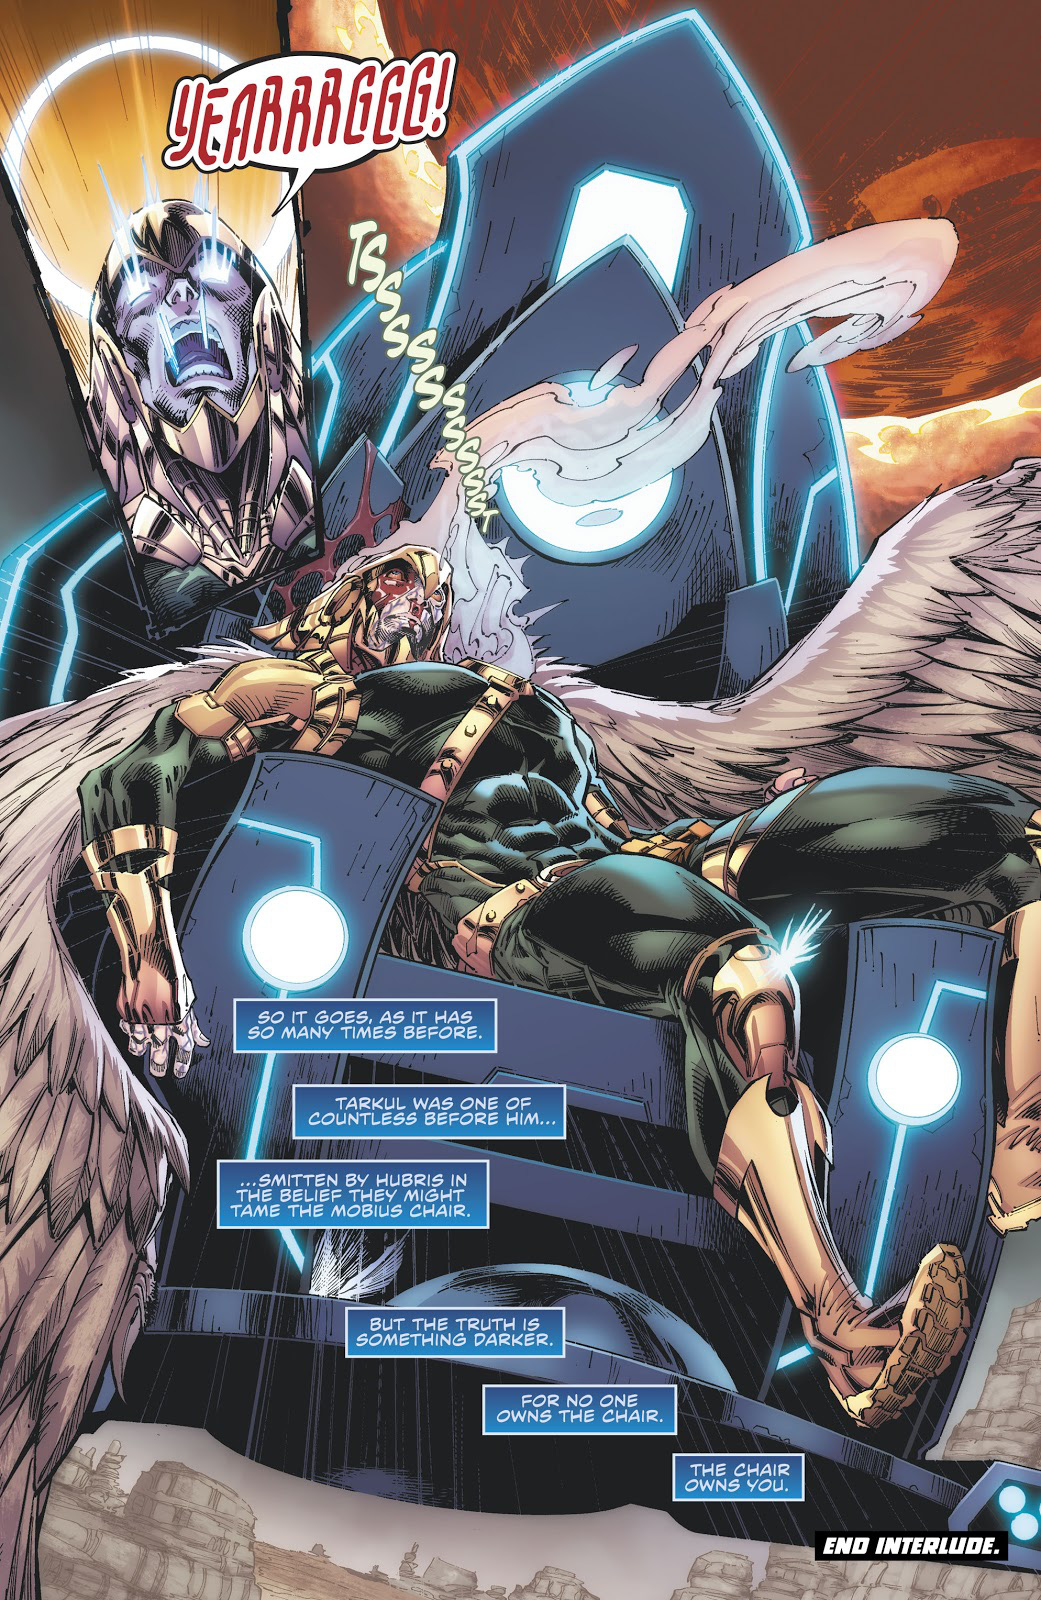 Thế chỗ Batman, The Flash trở thành Thần Trí Tuệ mới của vũ trụ DC